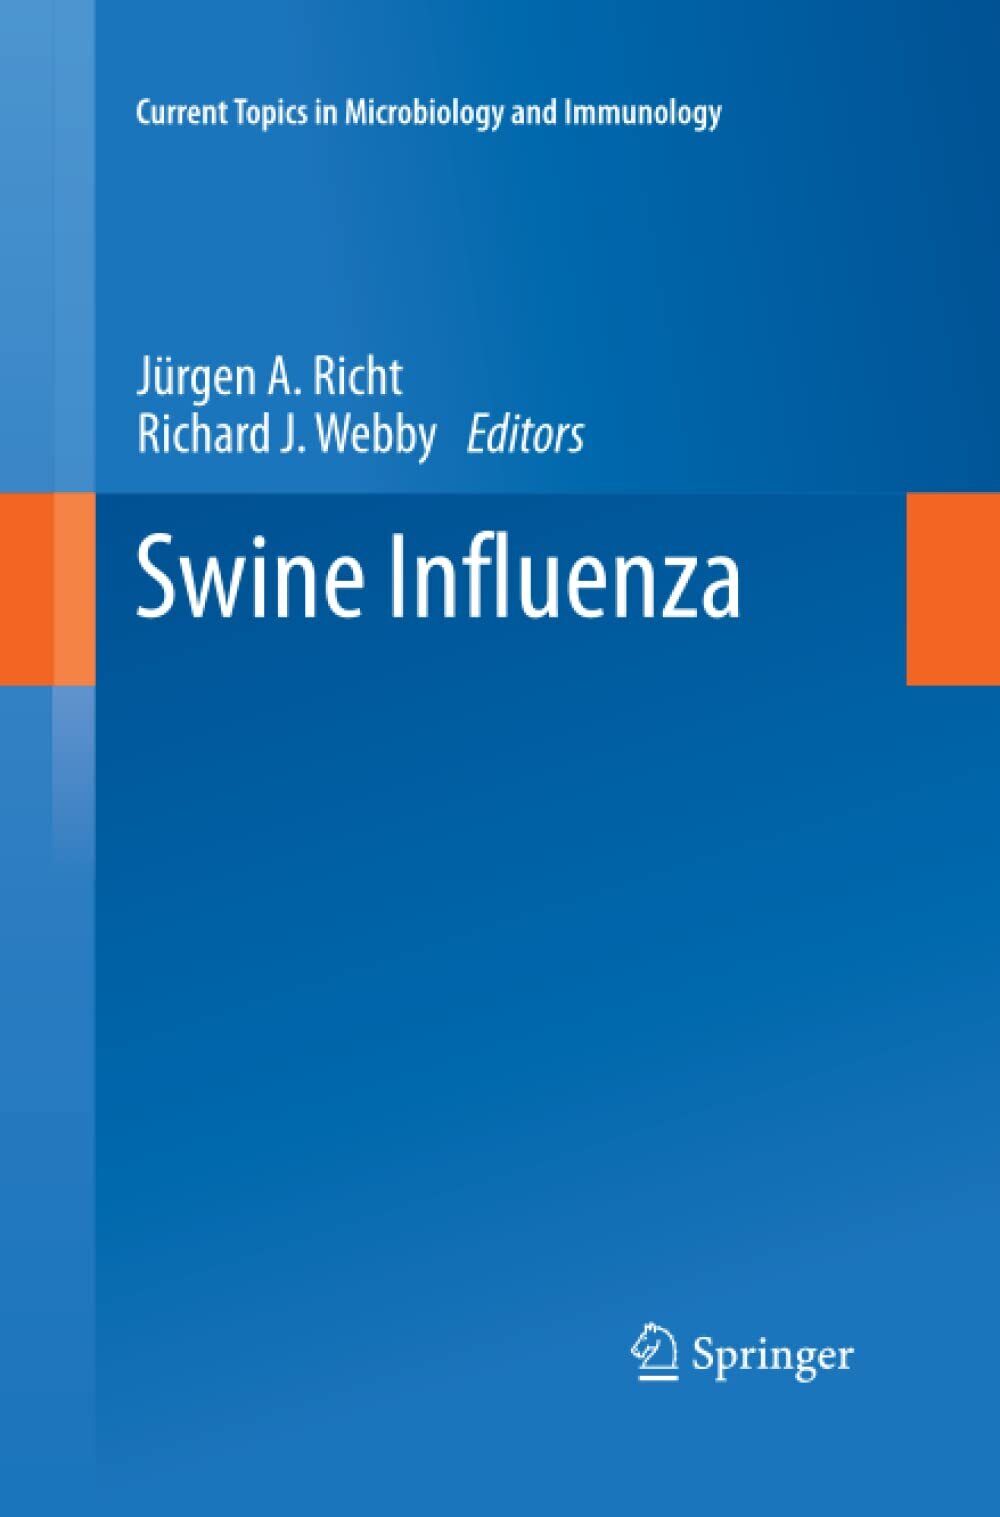 Swine Influenza - J?rgen A. Richt - Springer, 2015